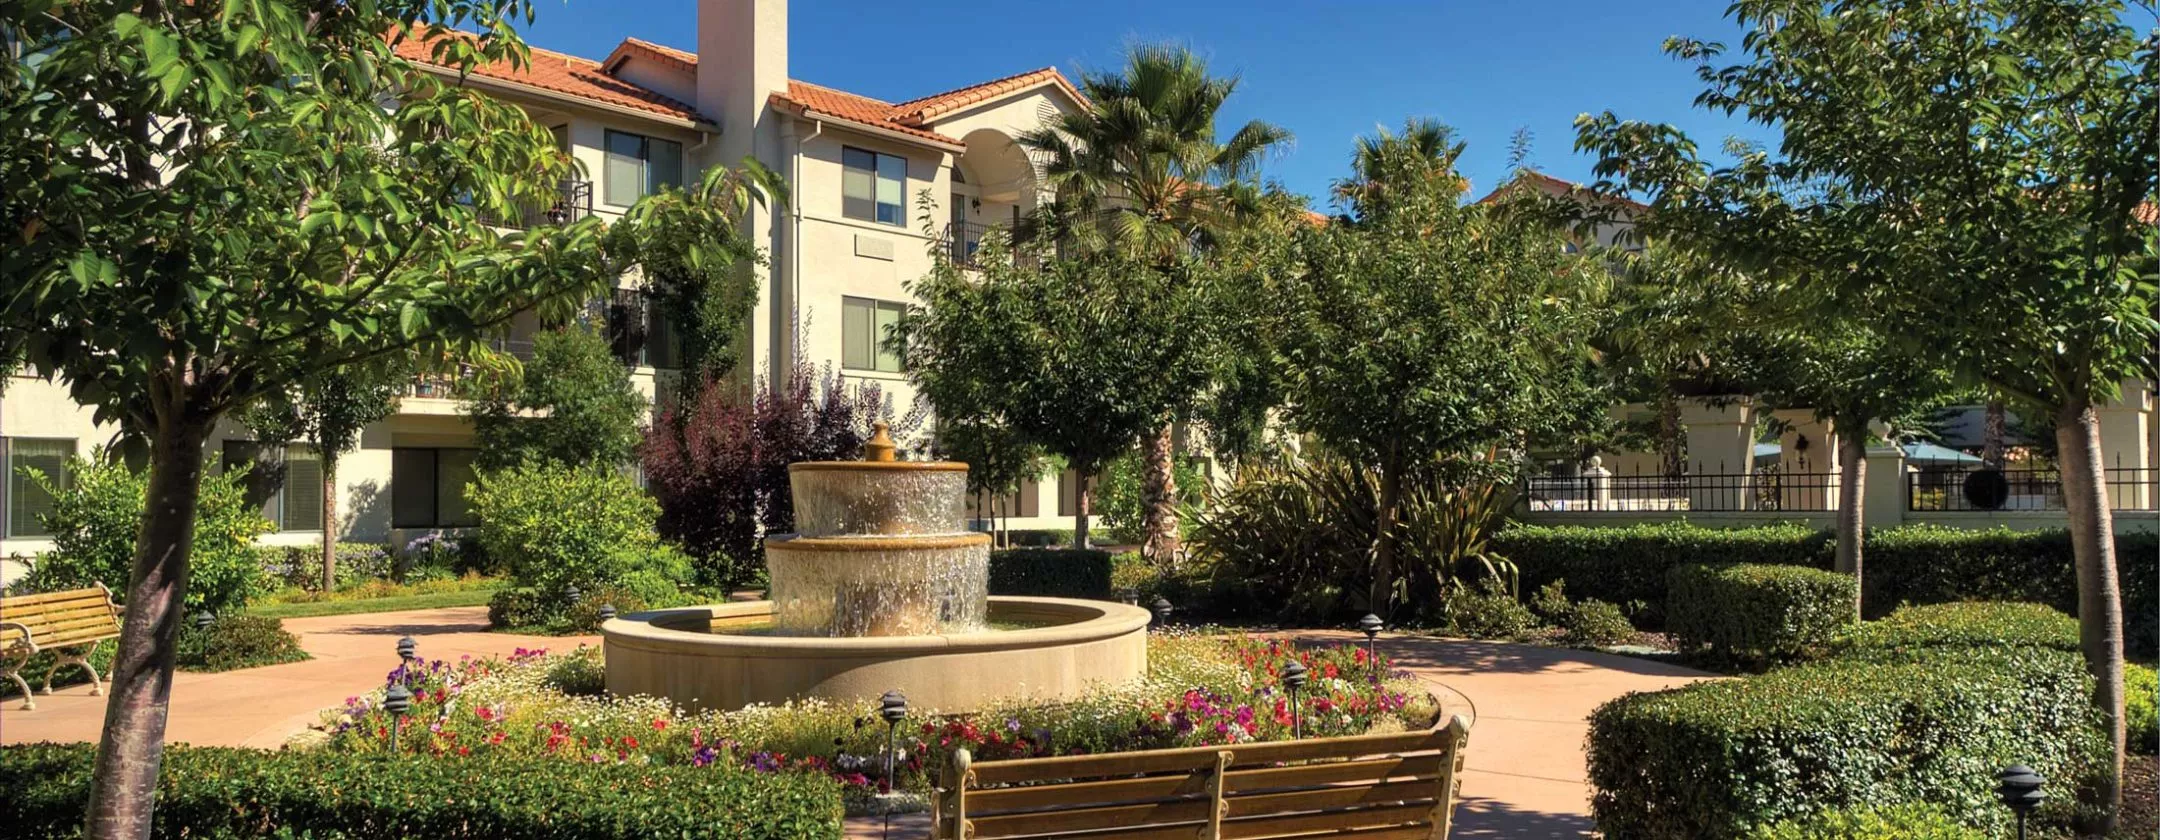 Montecito garden with fountain